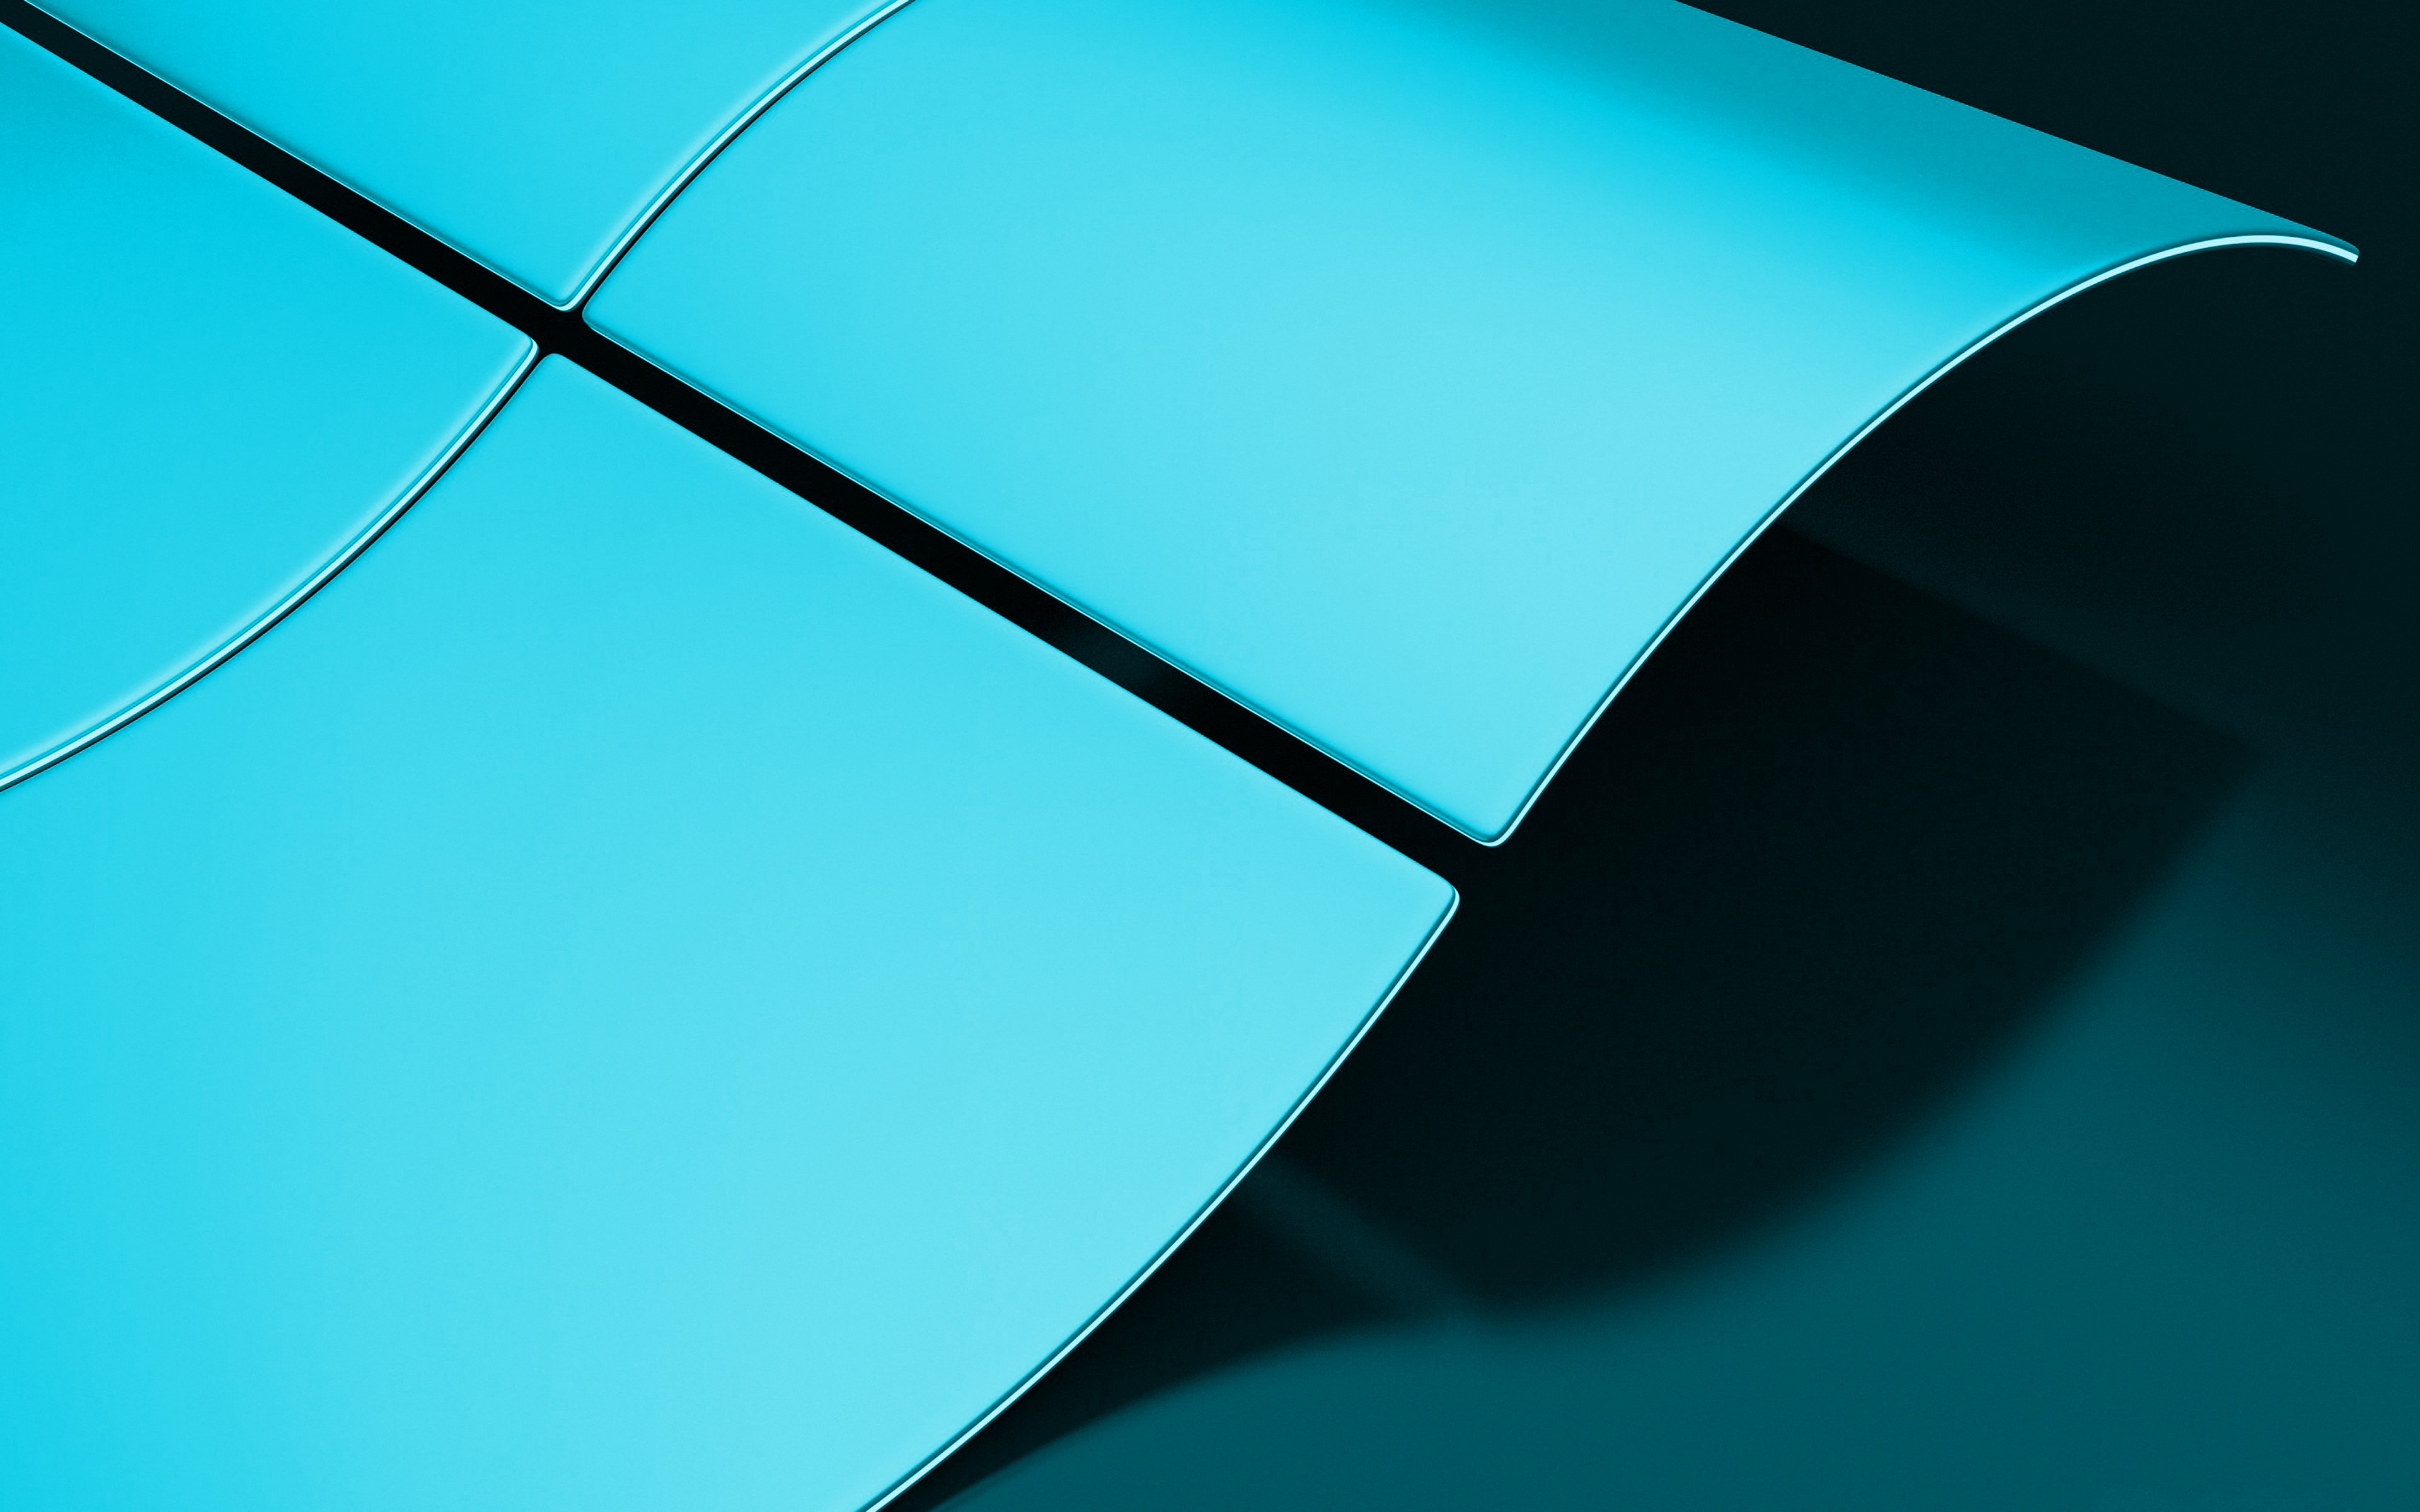 Logo Windows Azul Wallpaper Em Papel De Parede Do Windows Images | The ...